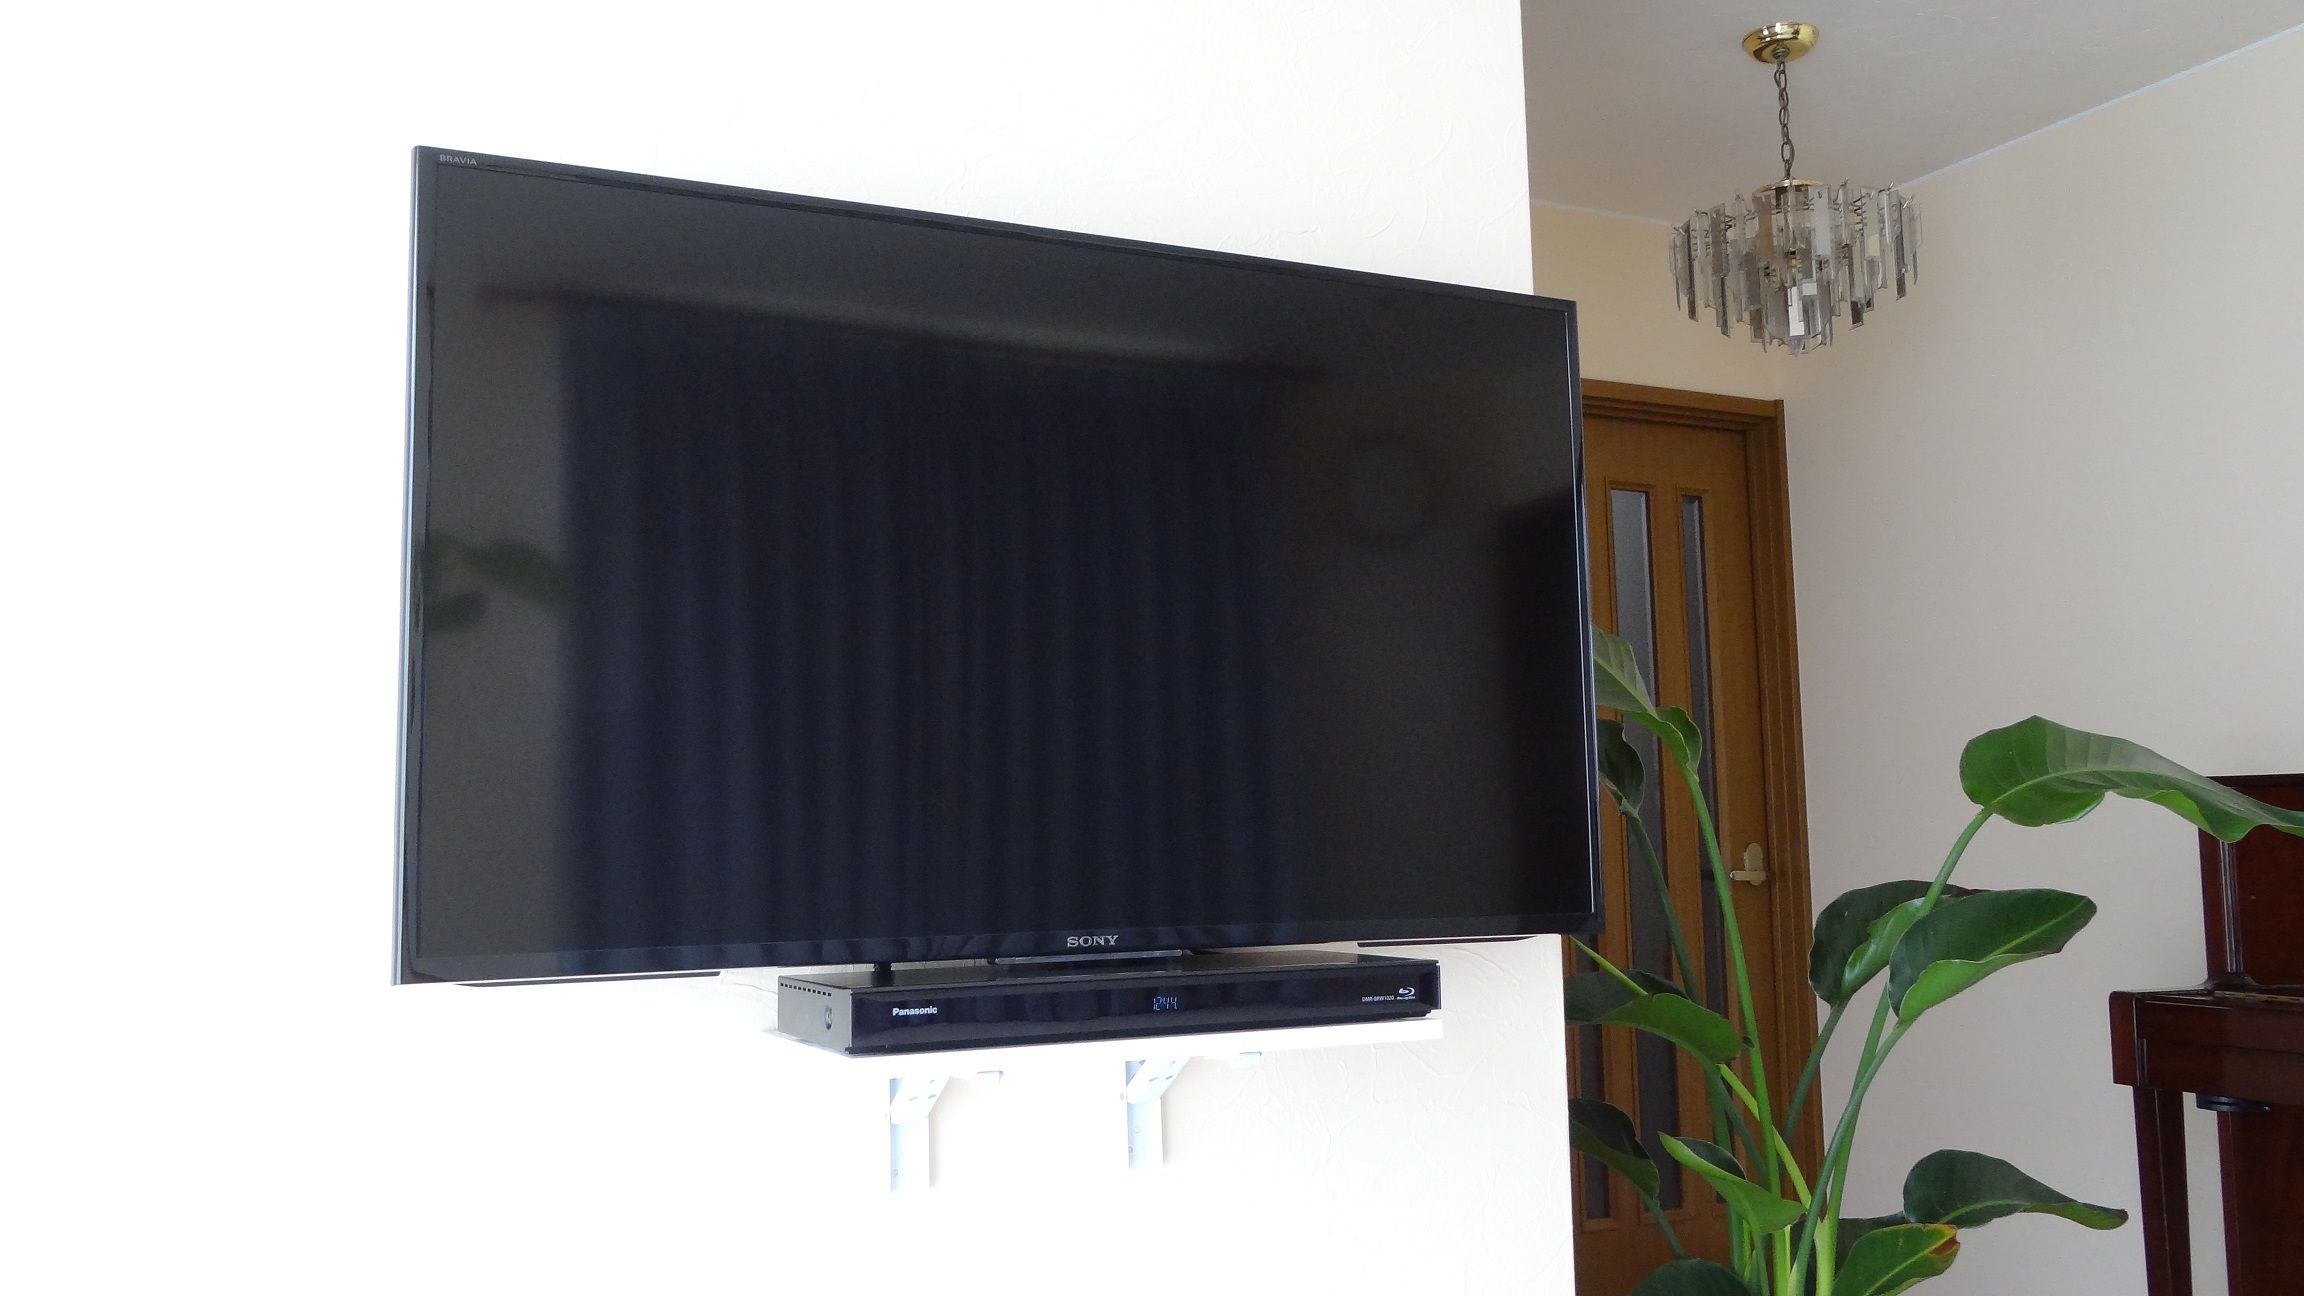 ウォールシェルフを上手に使った40インチテレビの壁掛け 壁掛けテレビはカトー電器